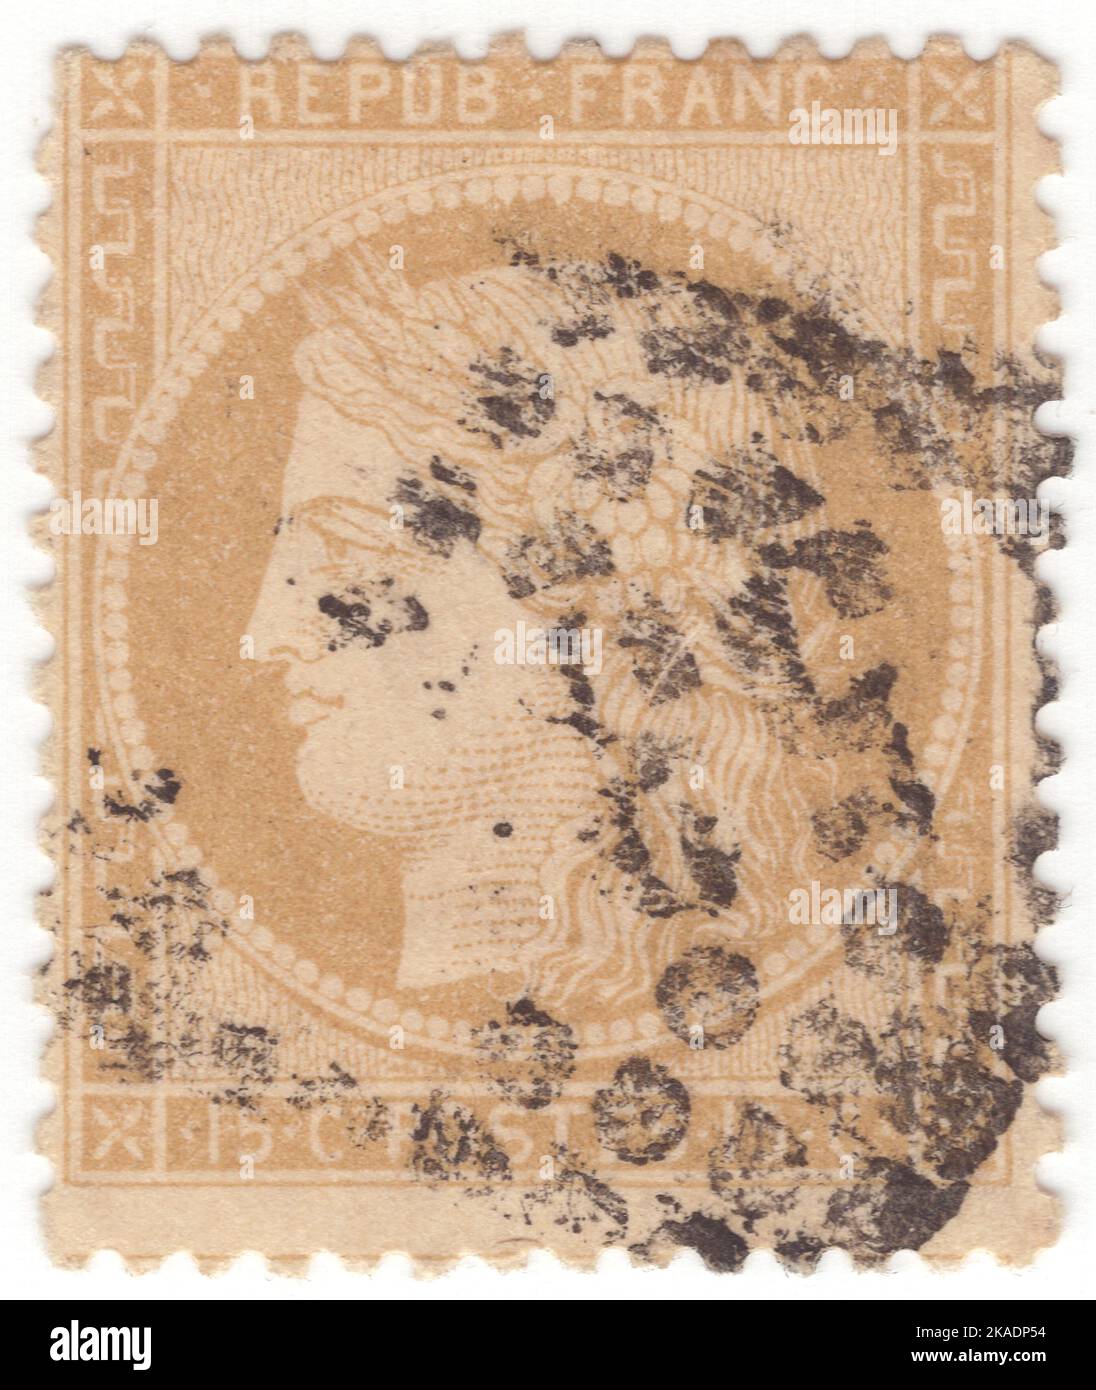 FRANCIA - 1871: Un bister da 15 centesimi su francobollo giallastro raffigurante Ceres — Dea dell'agricoltura, della fertilità, dei cereali, del raccolto, della maternità, la terra, e coltivò raccolti Foto Stock